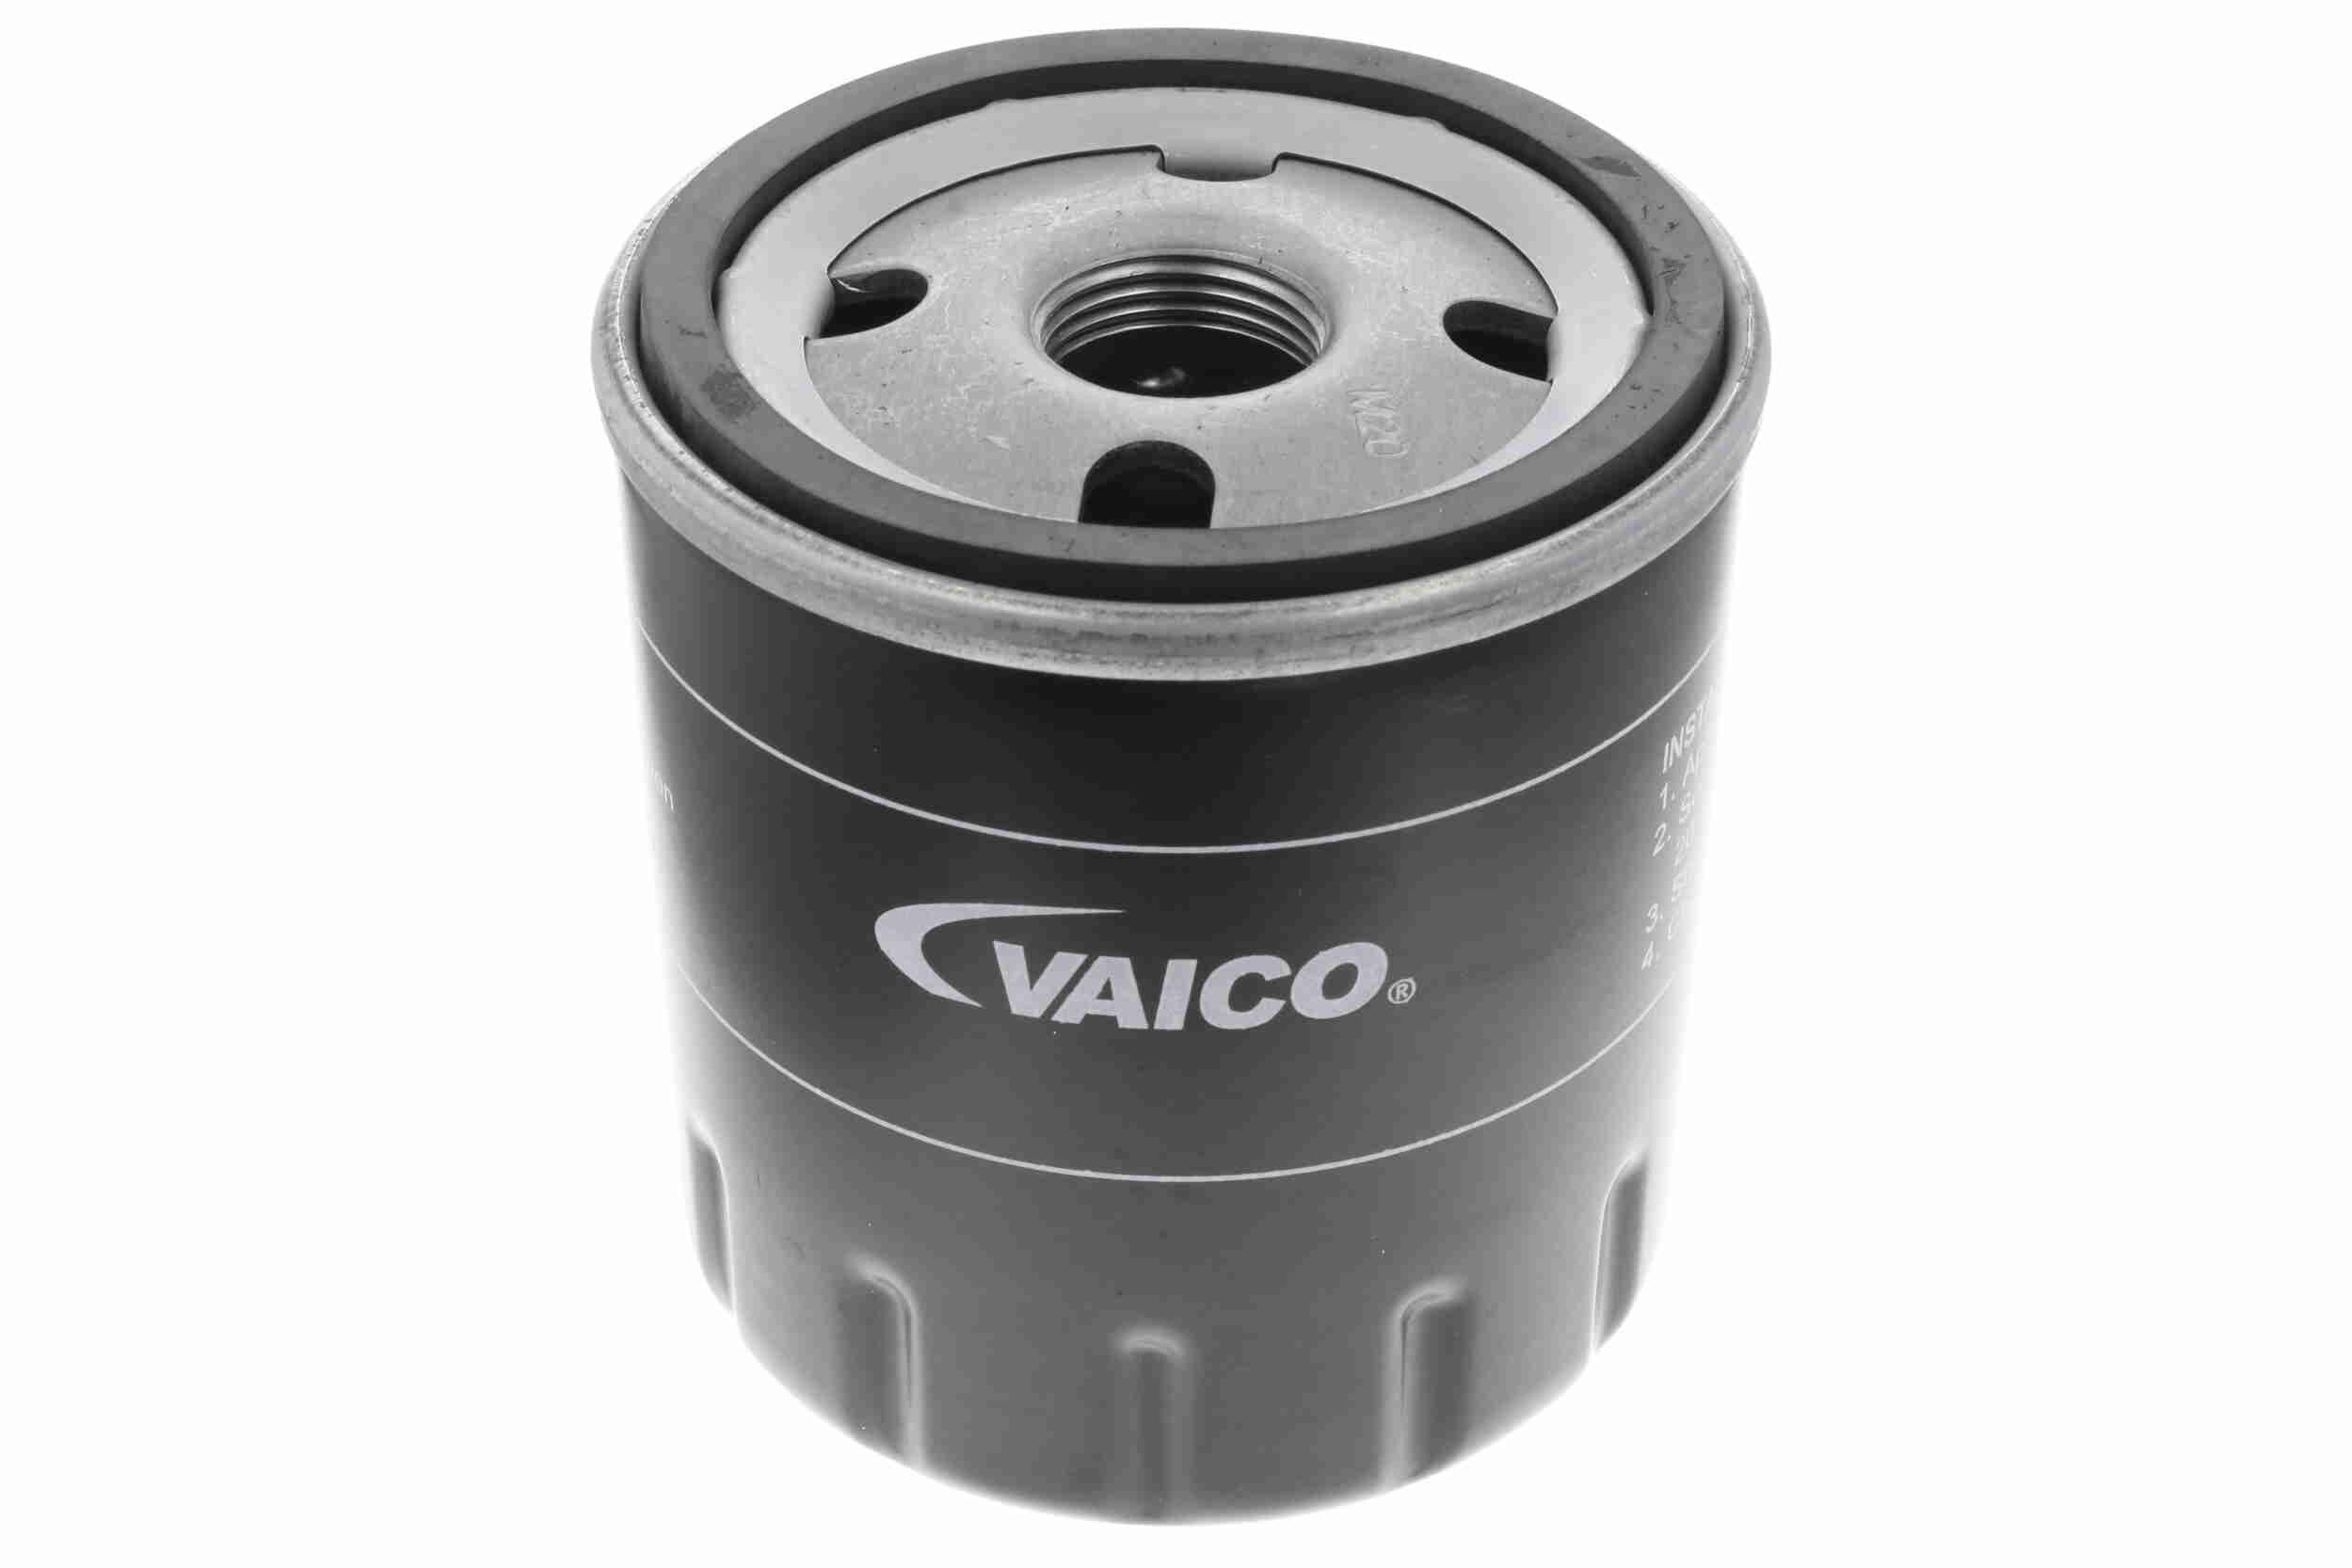 VAICO V42-0050 Olejový filtr R: 76mm, R: 79mm, Vnitřni průměr 2: 62mm, Vnitřni průměr 2: 71mm, Výška: 89mm